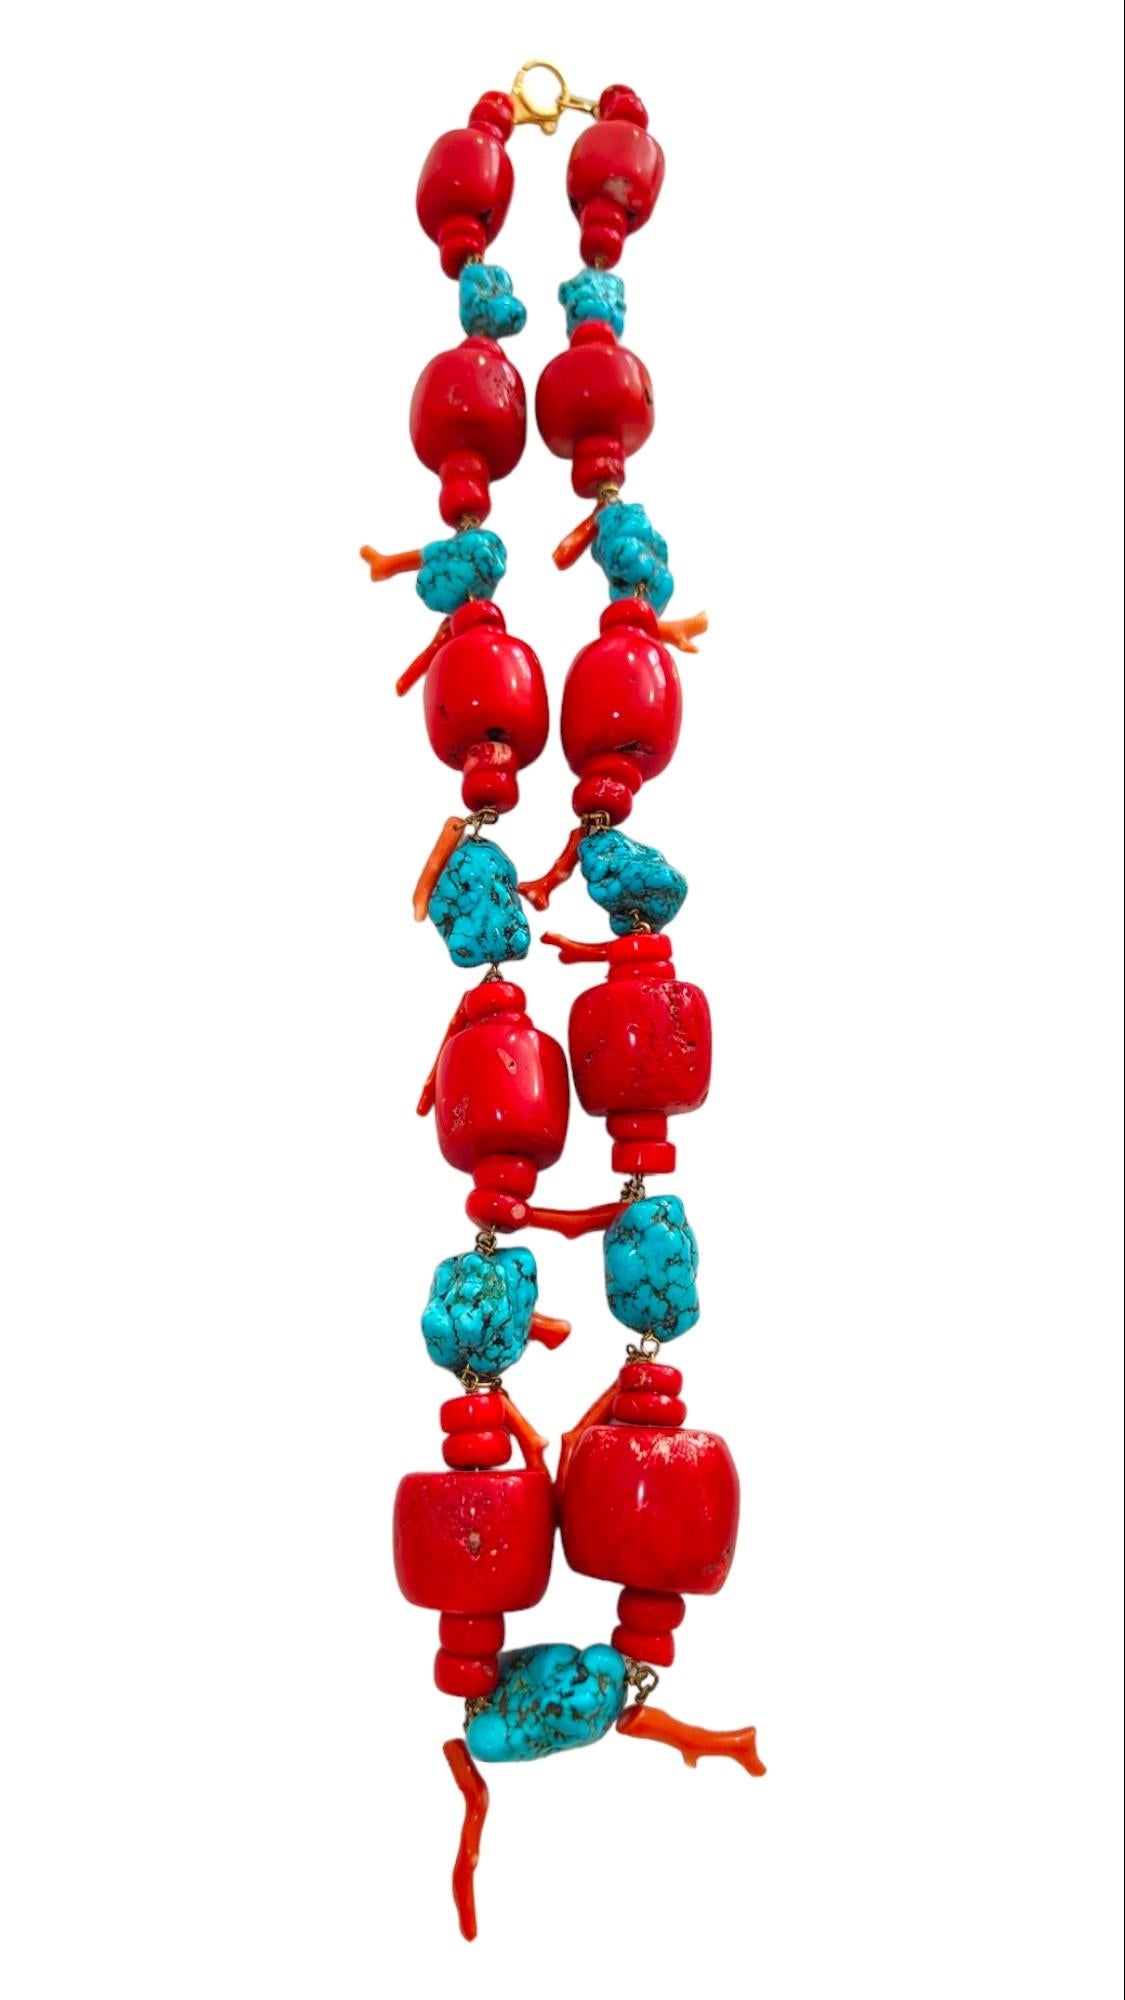 Riesige Halskette aus Türkis und roter Koralle
Diese riesigen polierten Türkisbrocken werden mit riesigen hochpolierten roten Korallenperlen akzentuiert, um diese faszinierende 90 cm lange Halskette zu vervollständigen. Der größte Türkis misst 36 mm